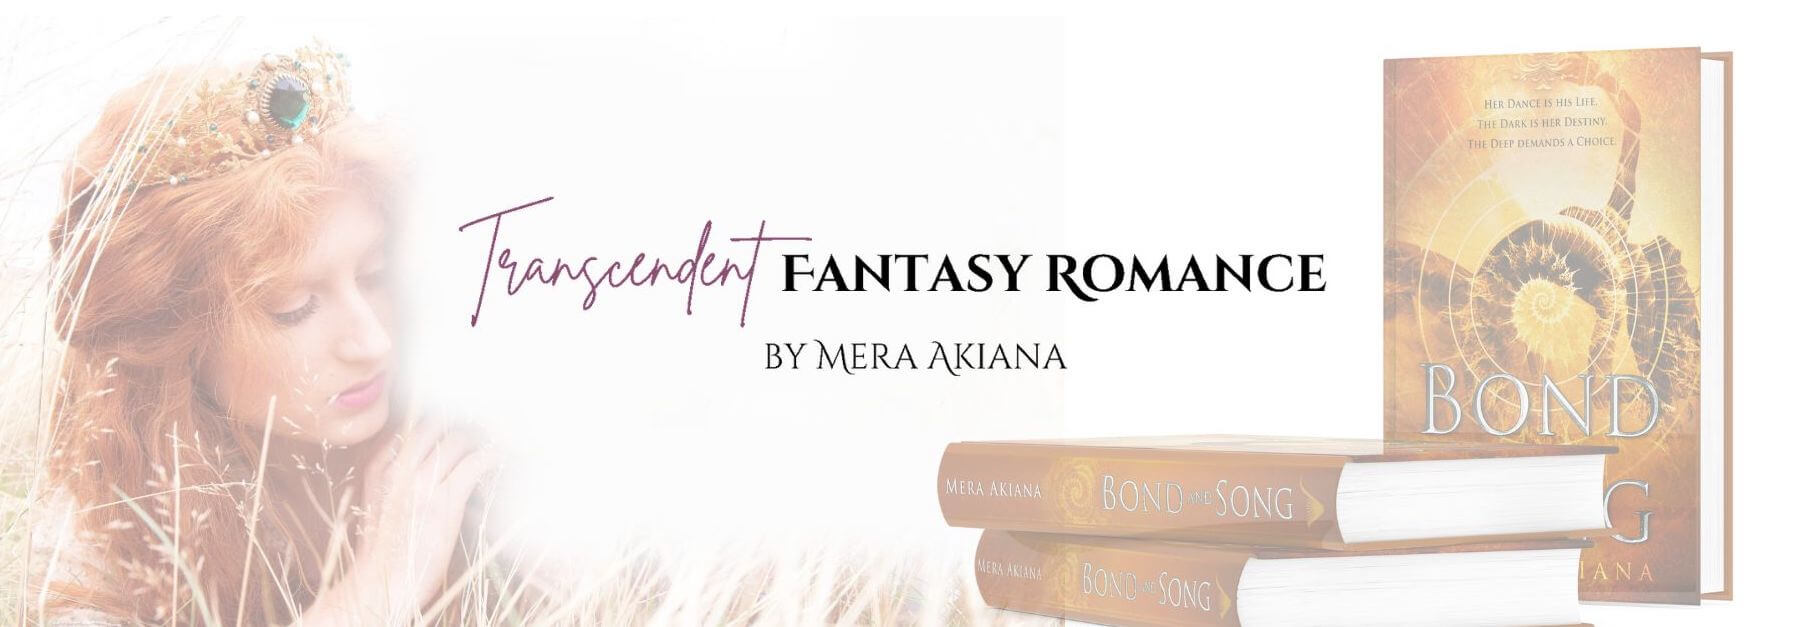 Transcendent Fantasy Romance by Mera Akiana